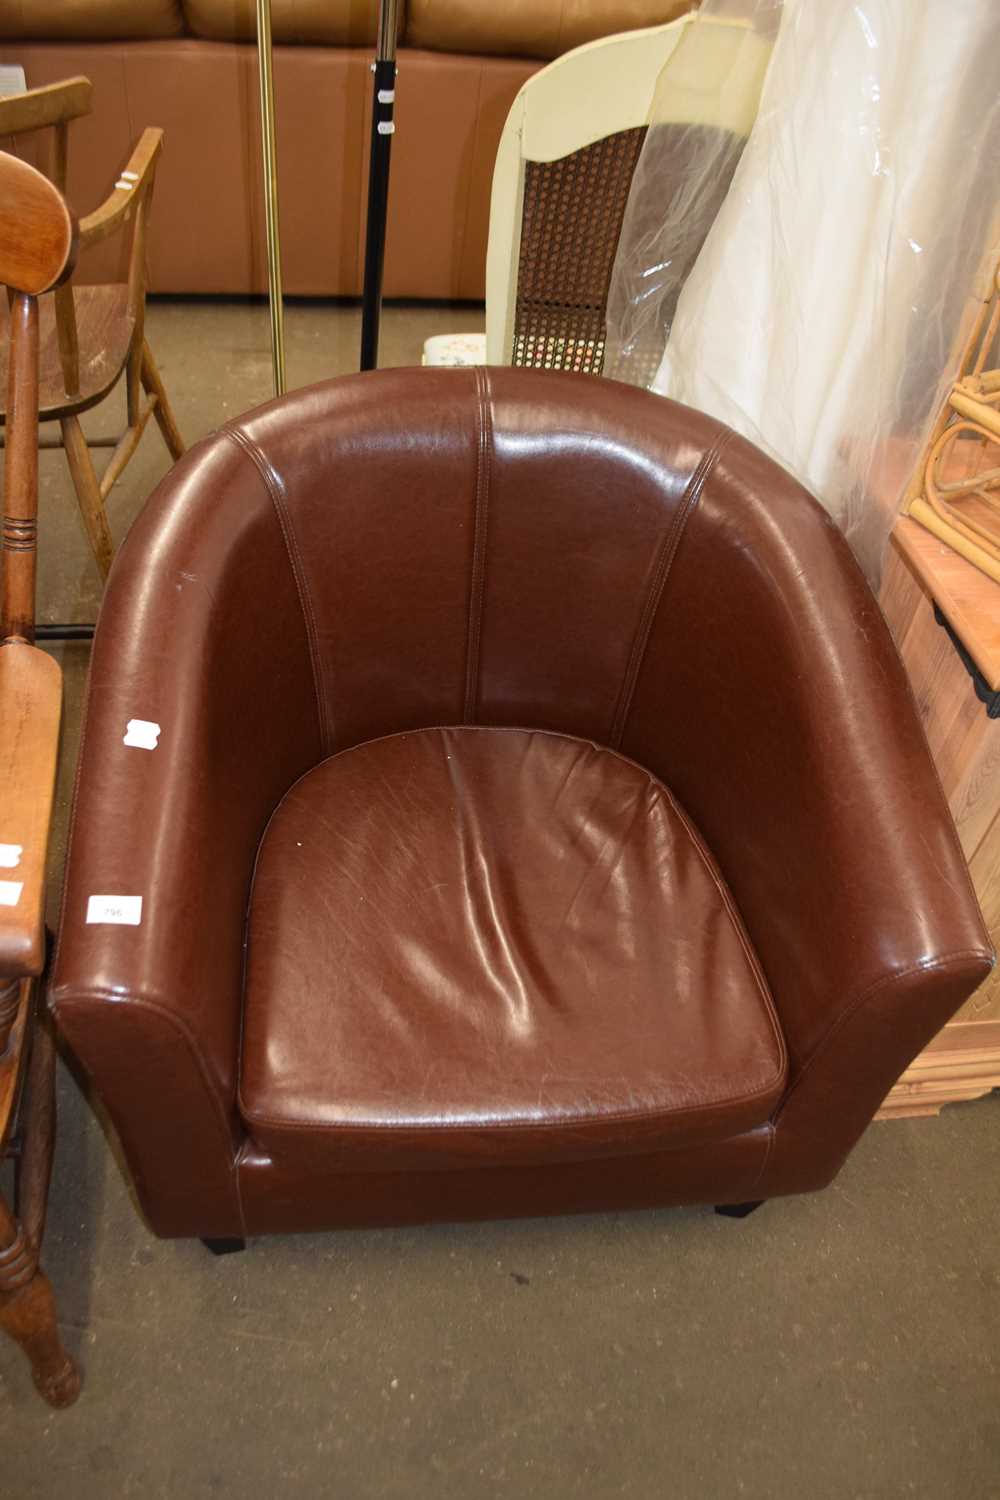 A brown tub chair